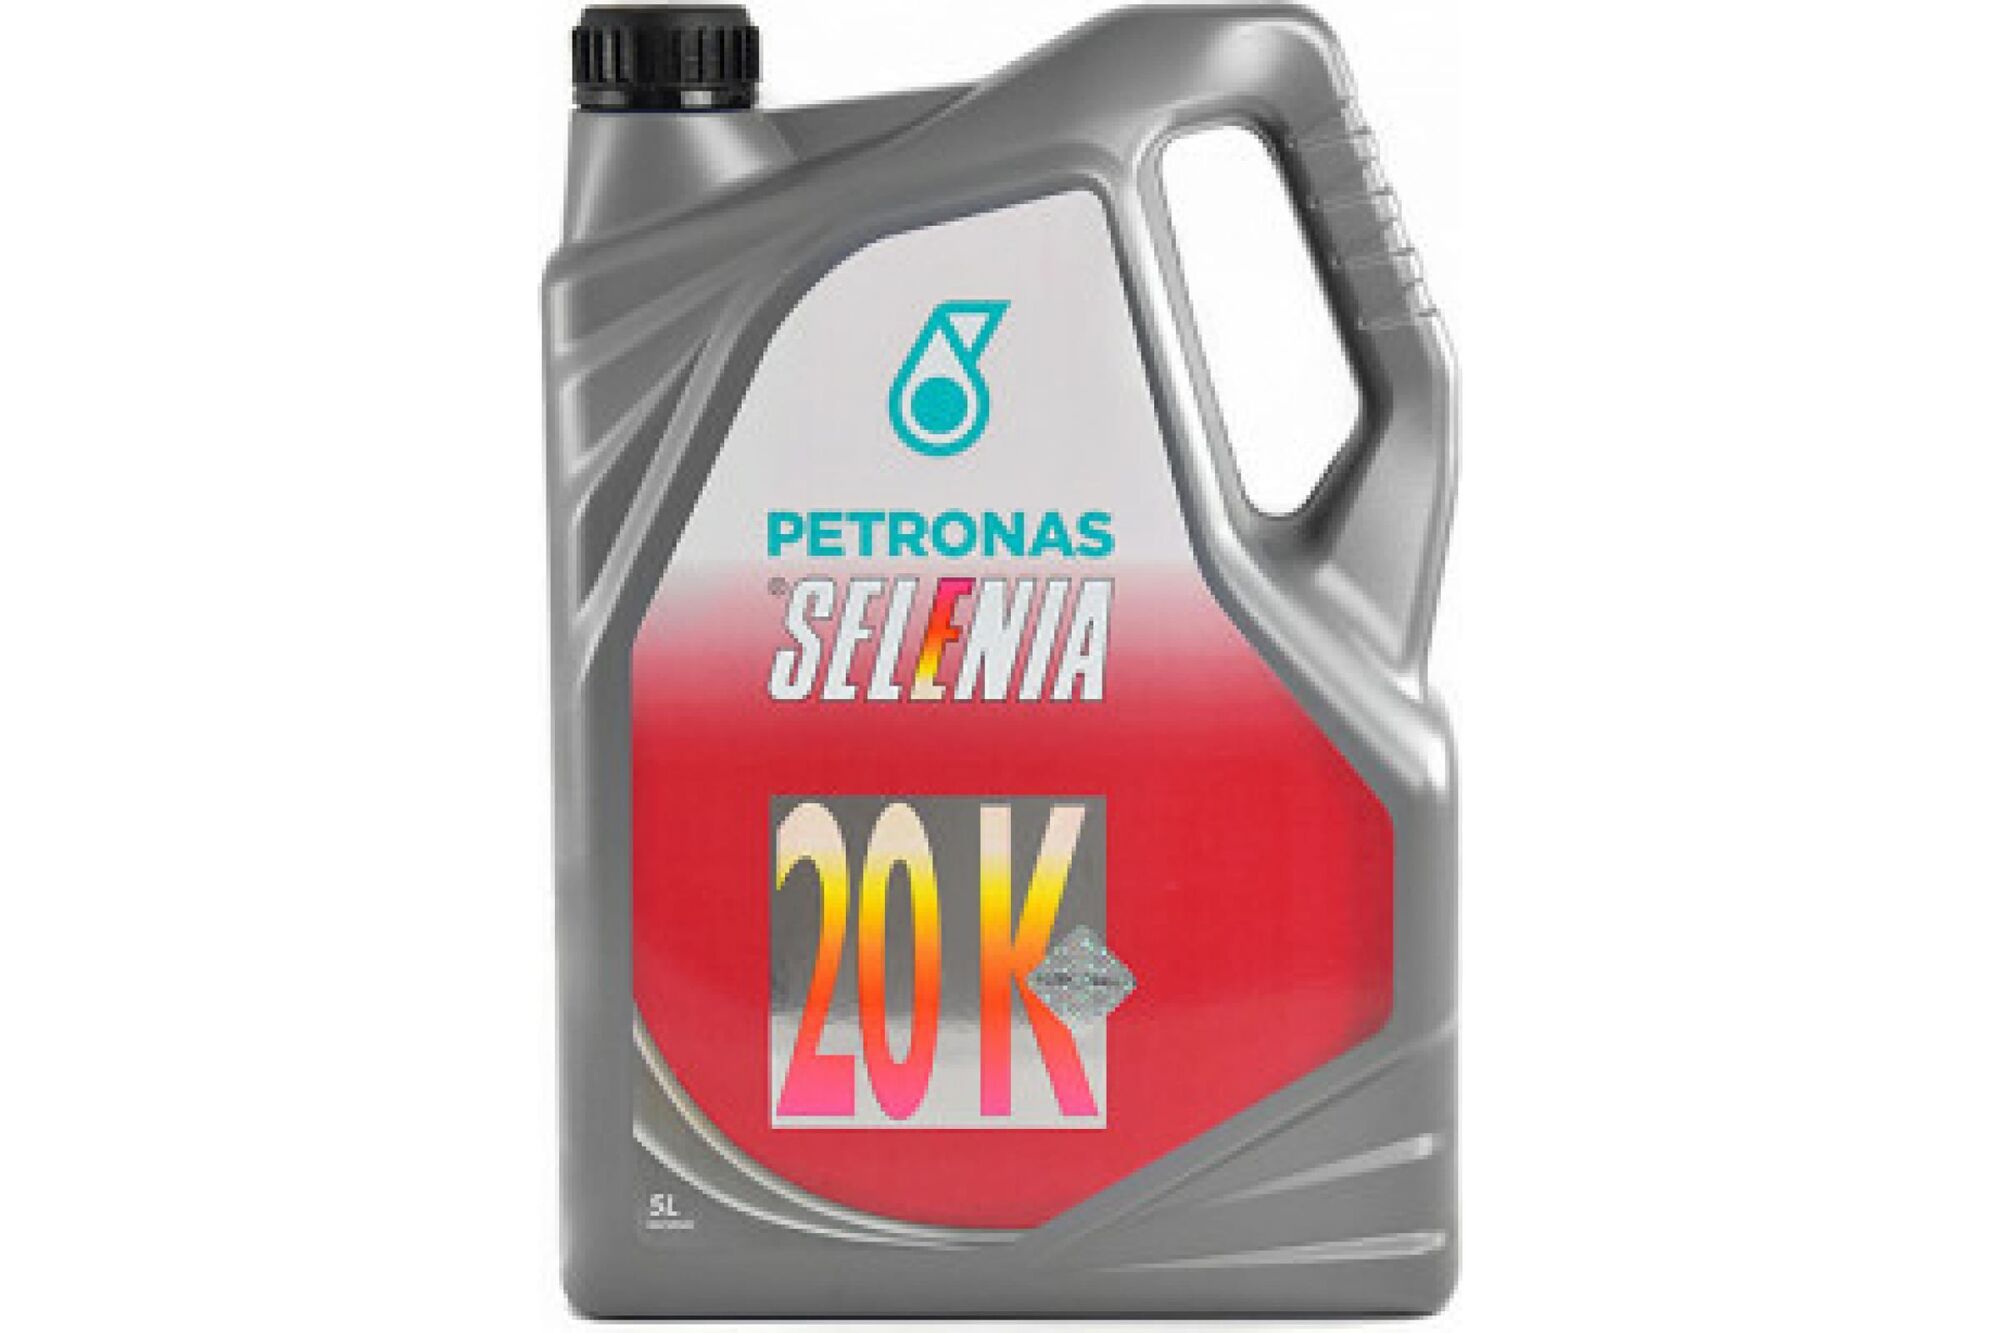 Моторное масло PETRONAS SELENIA 20 К полусинтетическое, 10W40, 5 л 70021M12EU